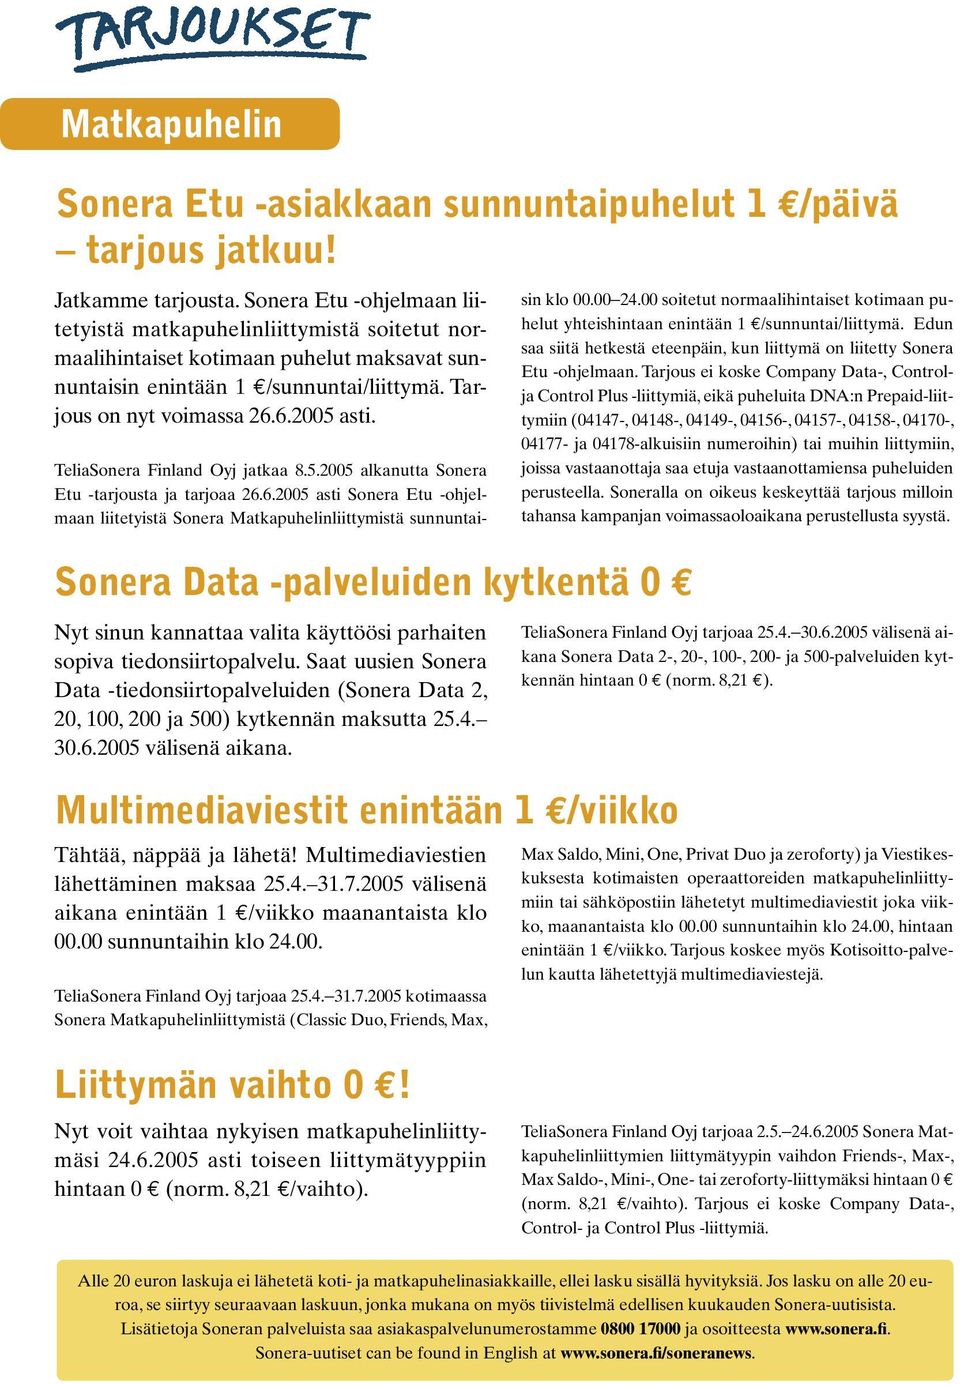 TeliaSonera Finland Oyj jatkaa 8.5.2005 alkanutta Sonera Etu -tarjousta ja tarjoaa 26.6.2005 asti Sonera Etu -ohjelmaan liitetyistä Sonera Matkapuhelinliittymistä sunnuntaisin klo 00.00 24.